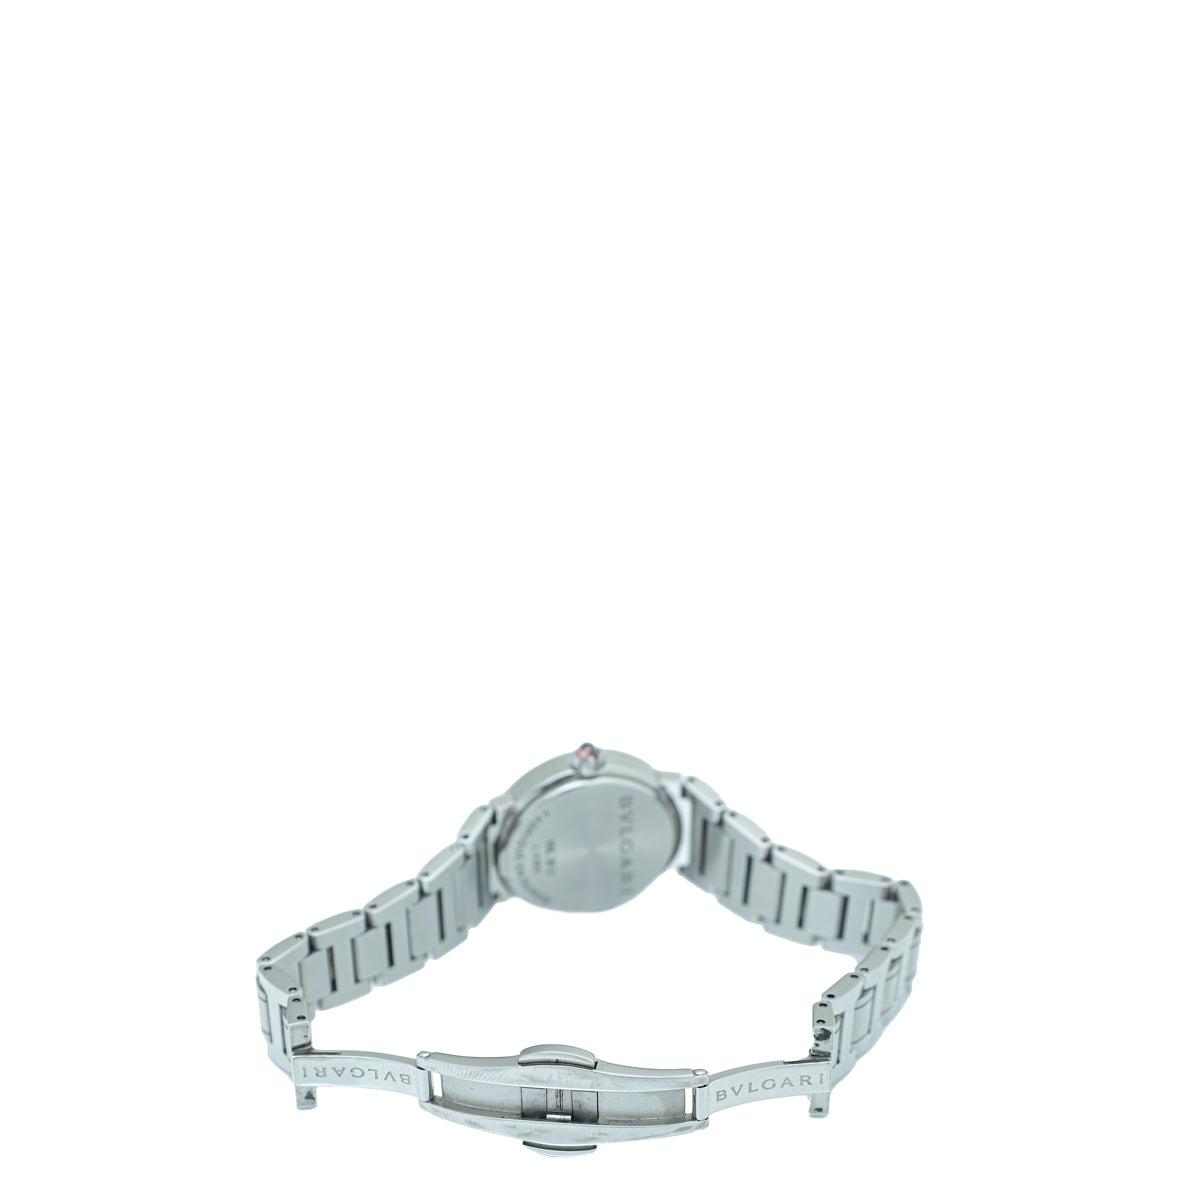 Bvlgari-Bvlgari Stainless Steel MOP Diamond 26mm Quartz Watch